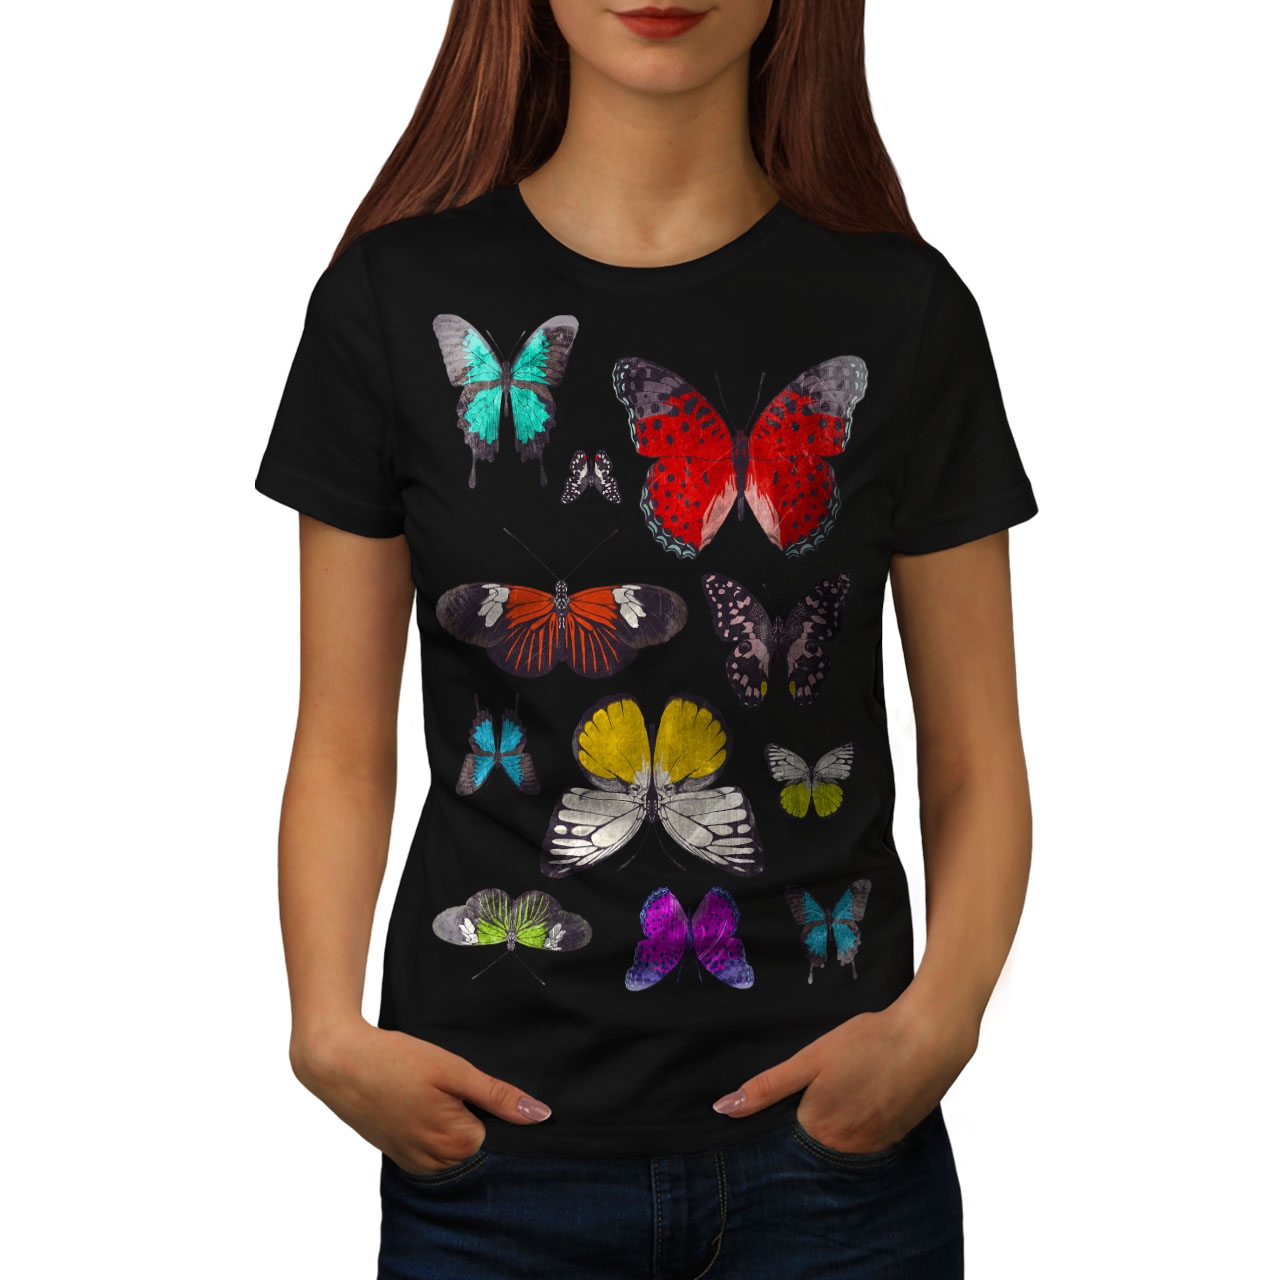 Кофта с бабочкой. Платье с бабочками женское. Кофта с бабочками. Футболка женская бабочки. Блузка с бабочками.